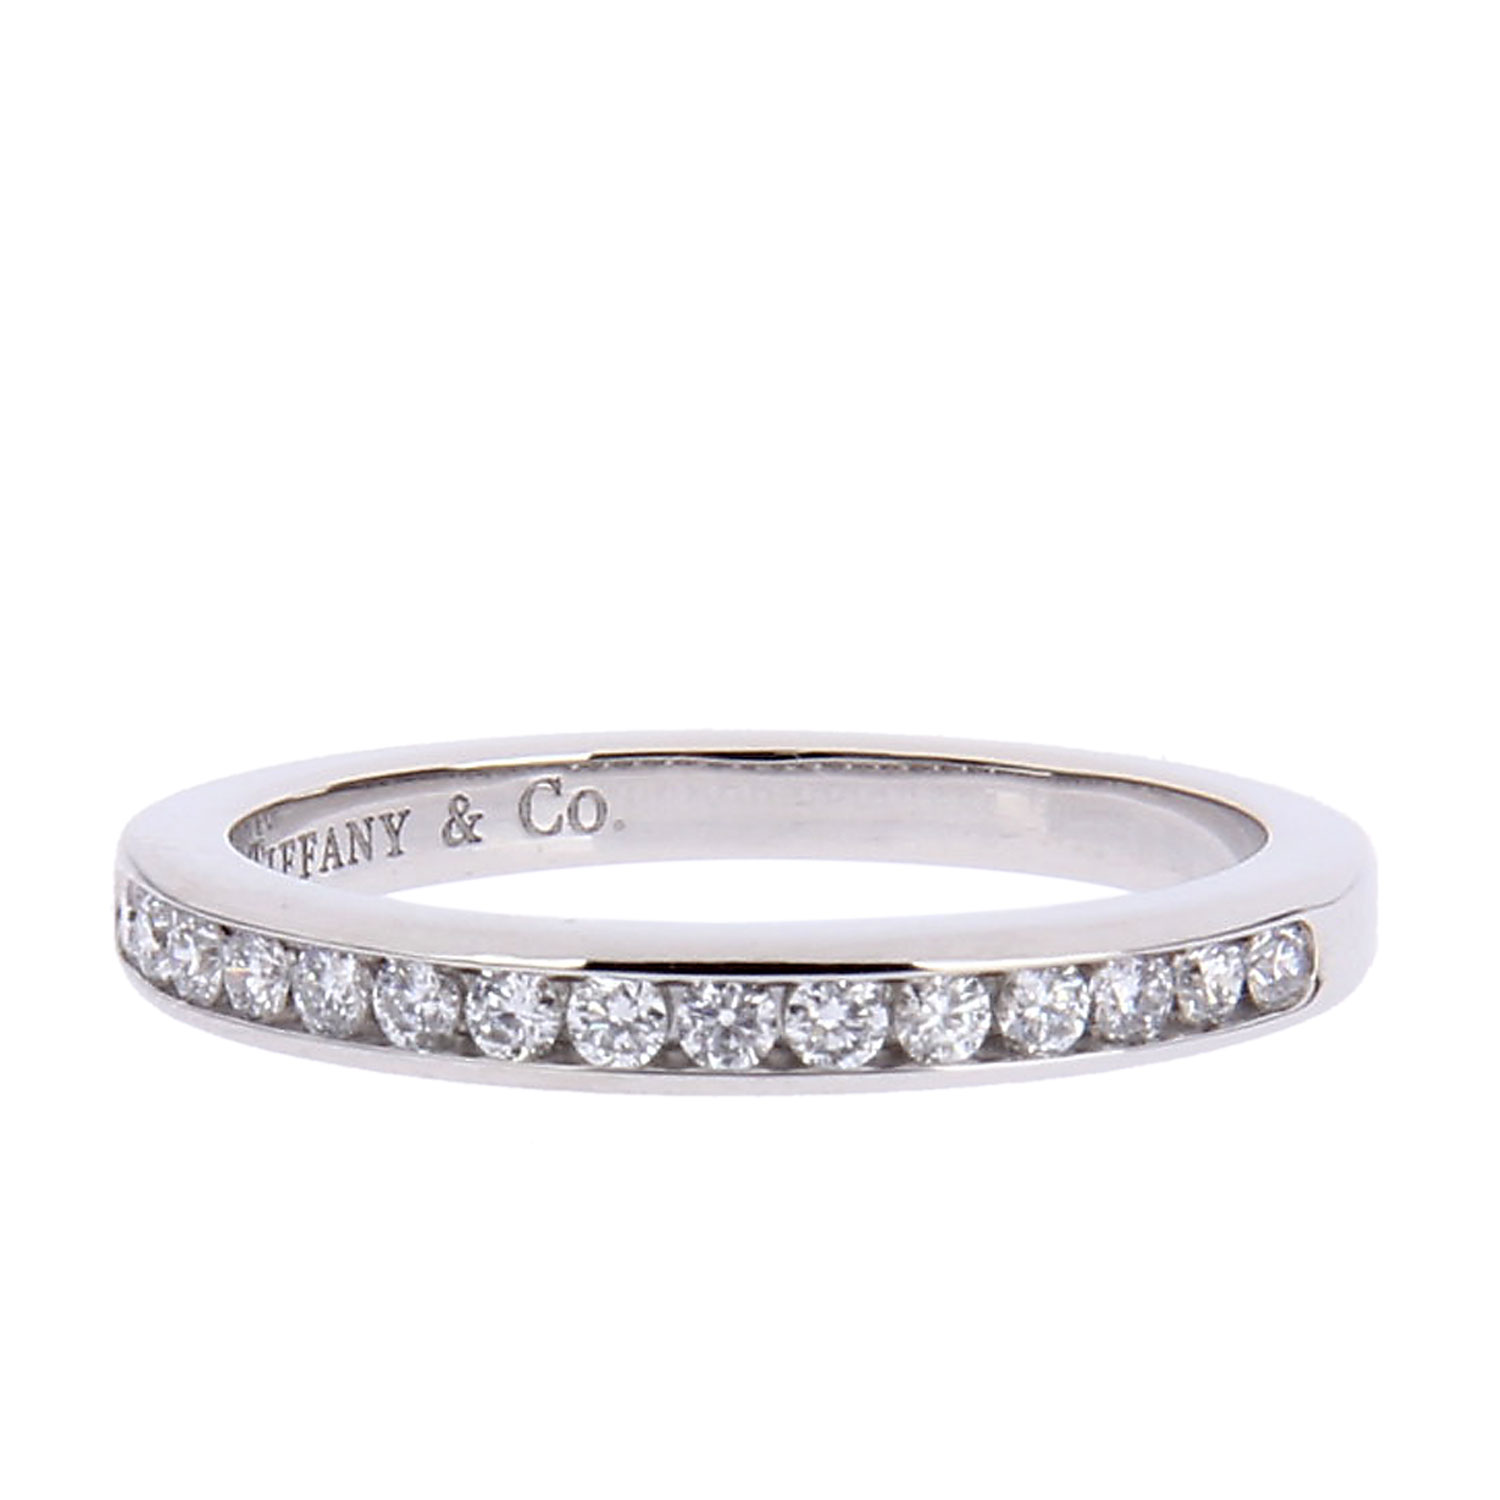 高清图|蒂芙尼订婚戒指Tiffany Soleste钻戒戒指图片1|腕表之家-珠宝